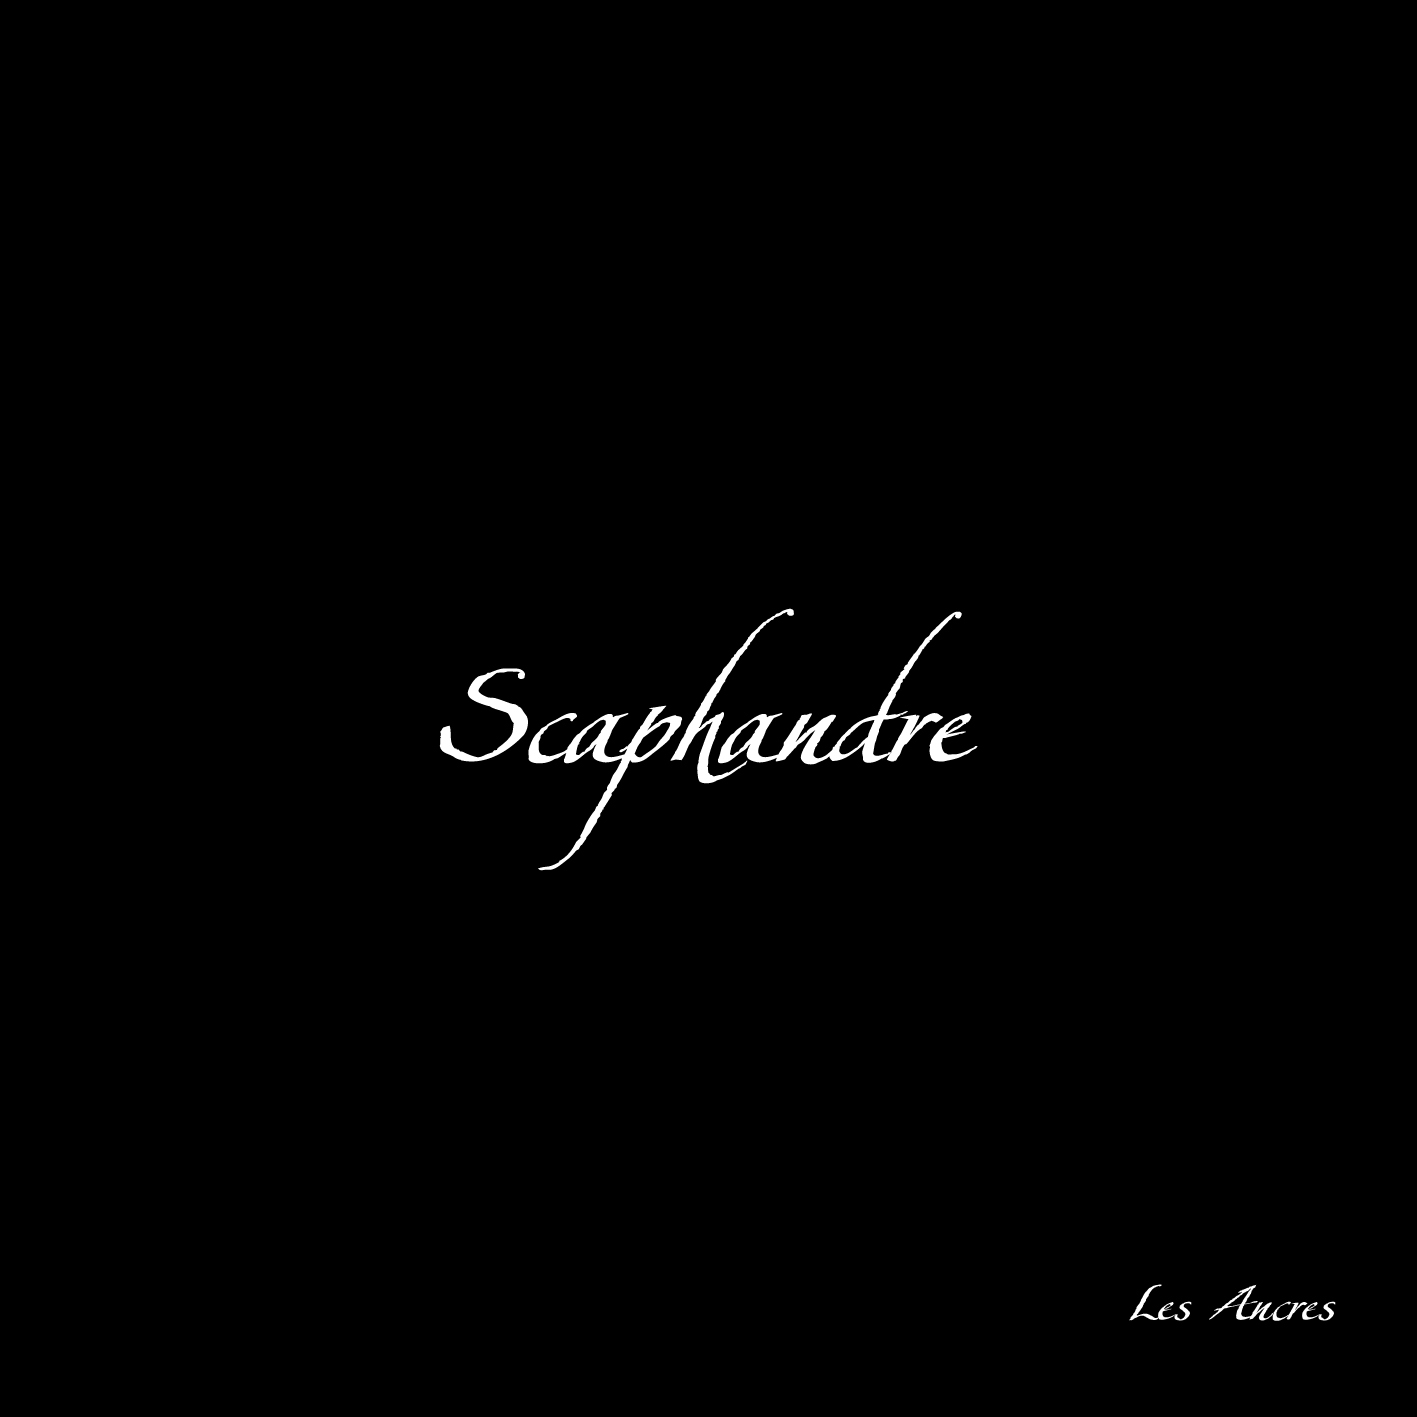 Scaphandre(Fra) -Les Ancres (pro cdr)